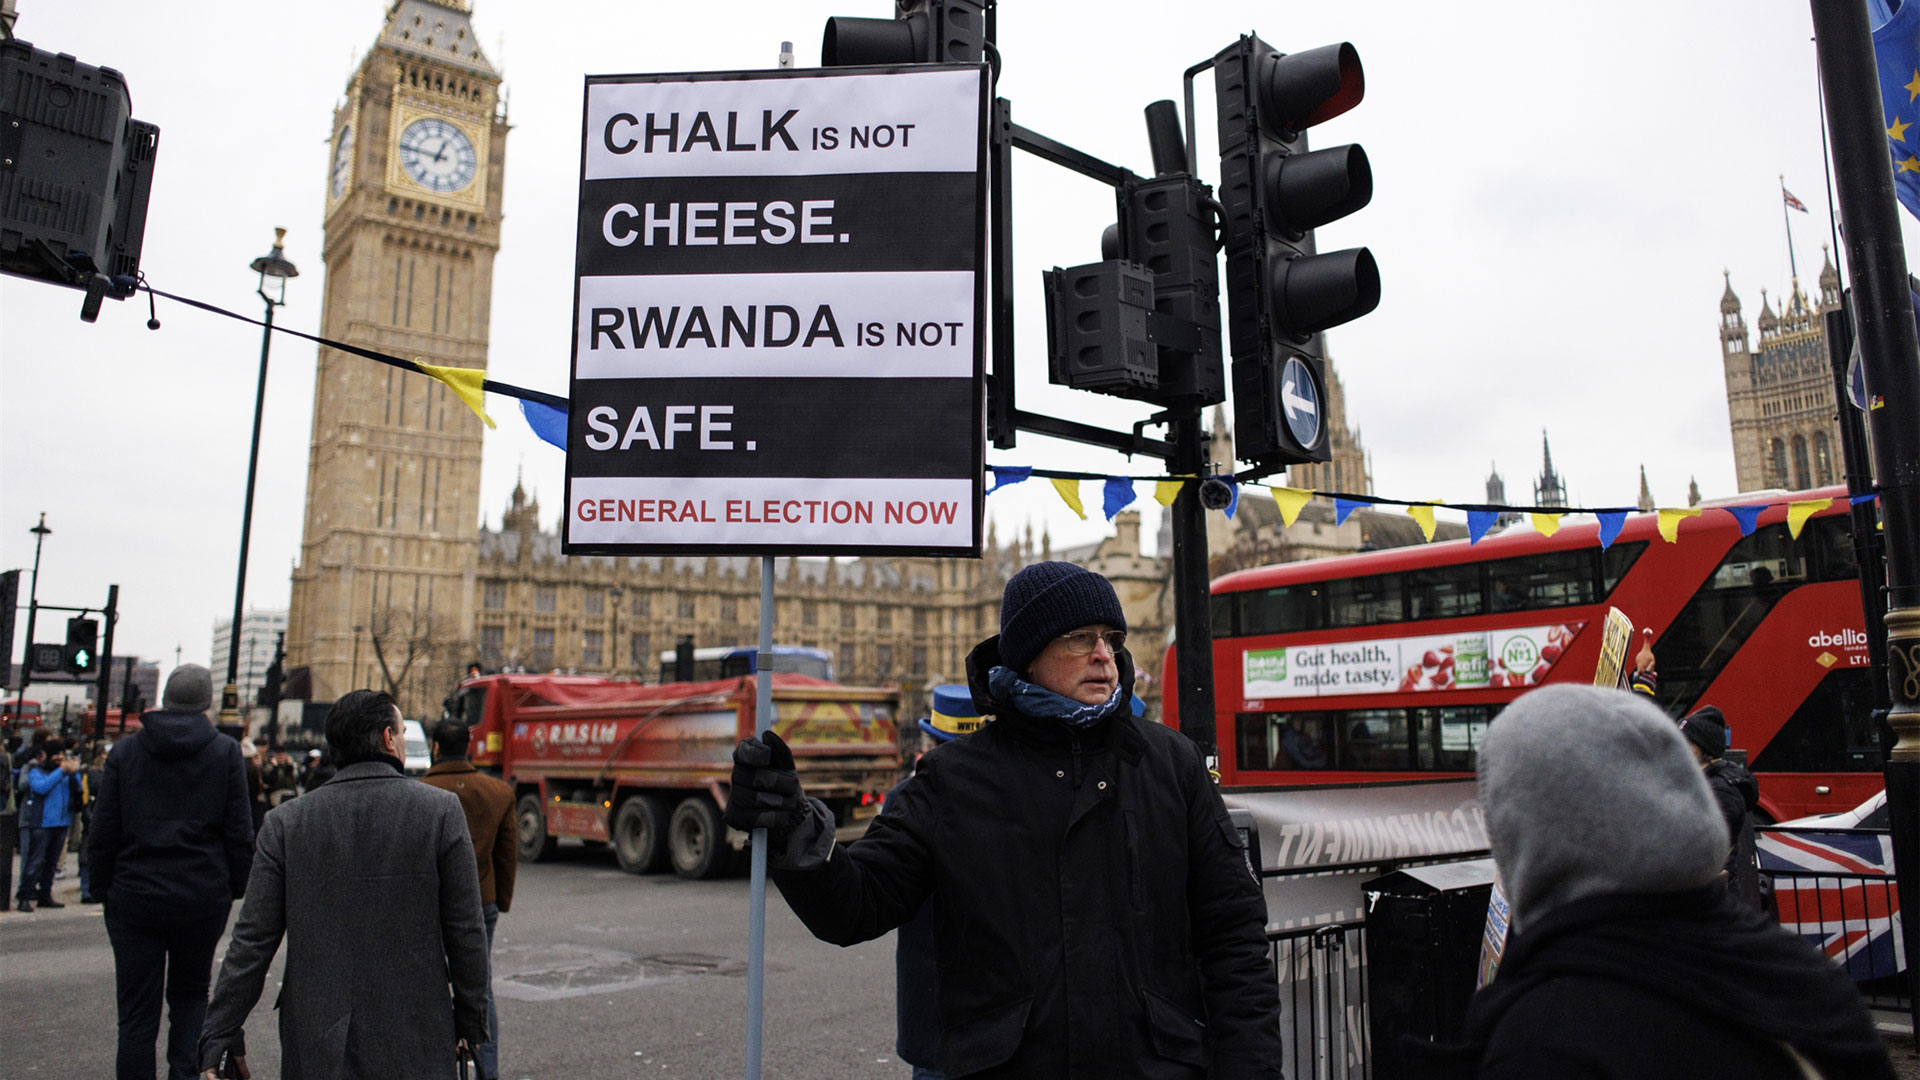 βρετανία: κάνουν πίσω οι αντάρτες για το «σχέδιο ρουάντα»